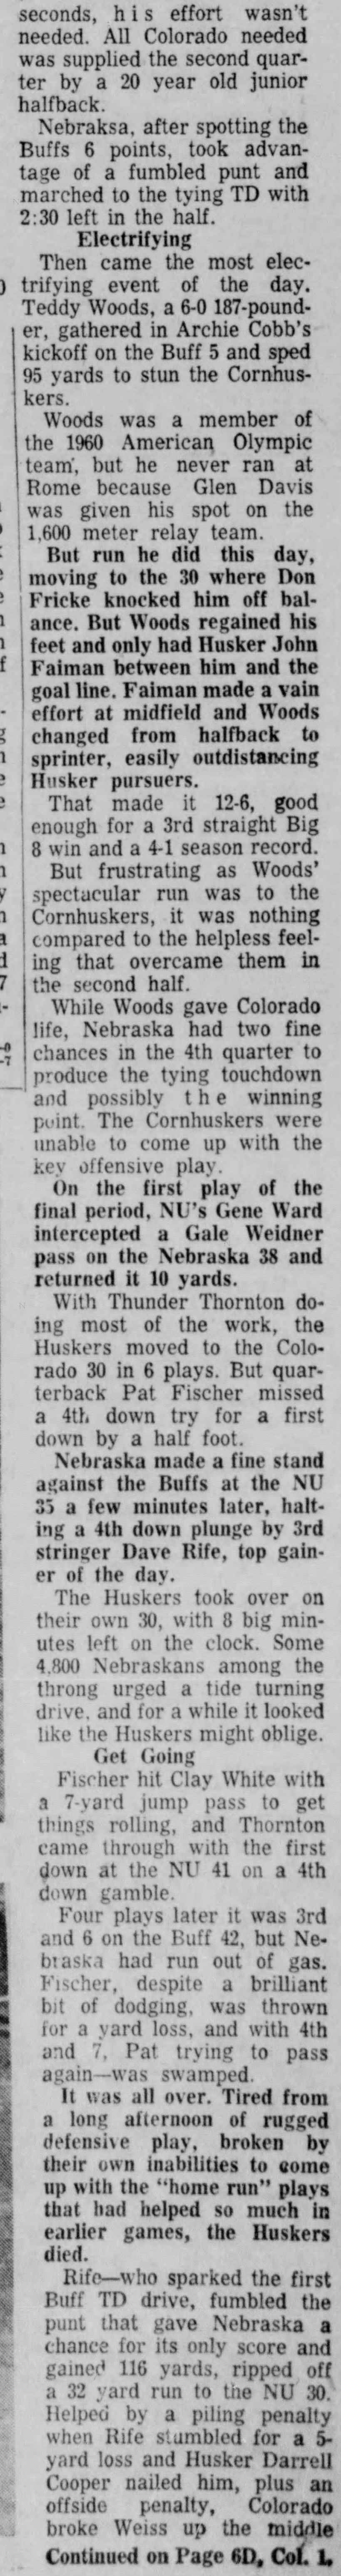 1960 Nebraska-Colorado football, part 2